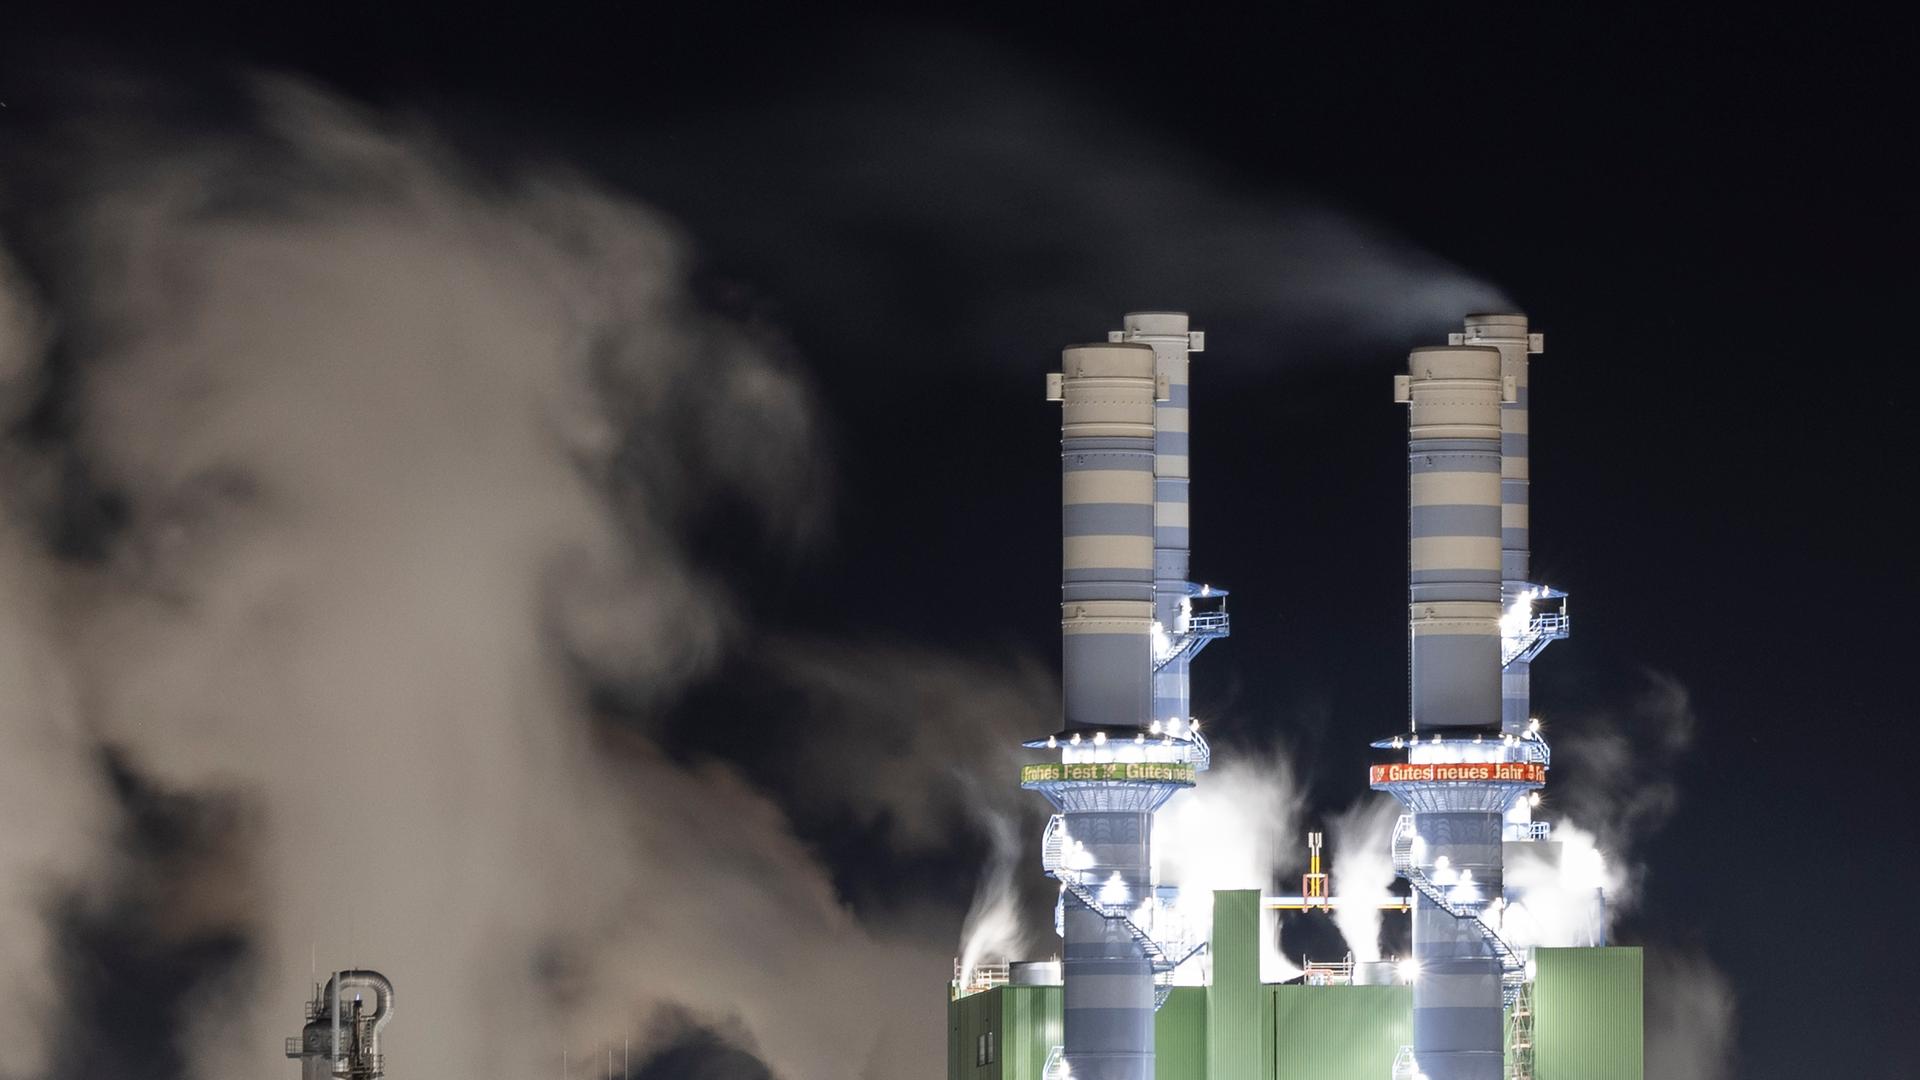 Dampf steigt aus Industrieschornsteinen des Industriepark Höchst auf. Das EU-Parlament und die 27 Mitgliedsstaaten verhandeln von Freitag an über wichtige Teile des Klimapakets Â«Fit for 55Â». Dabei geht es um eine Reform des EU-Emissionshandels und einen Klima-Sozialfonds, der Bürger bei der Energiewende unterstützen soll.